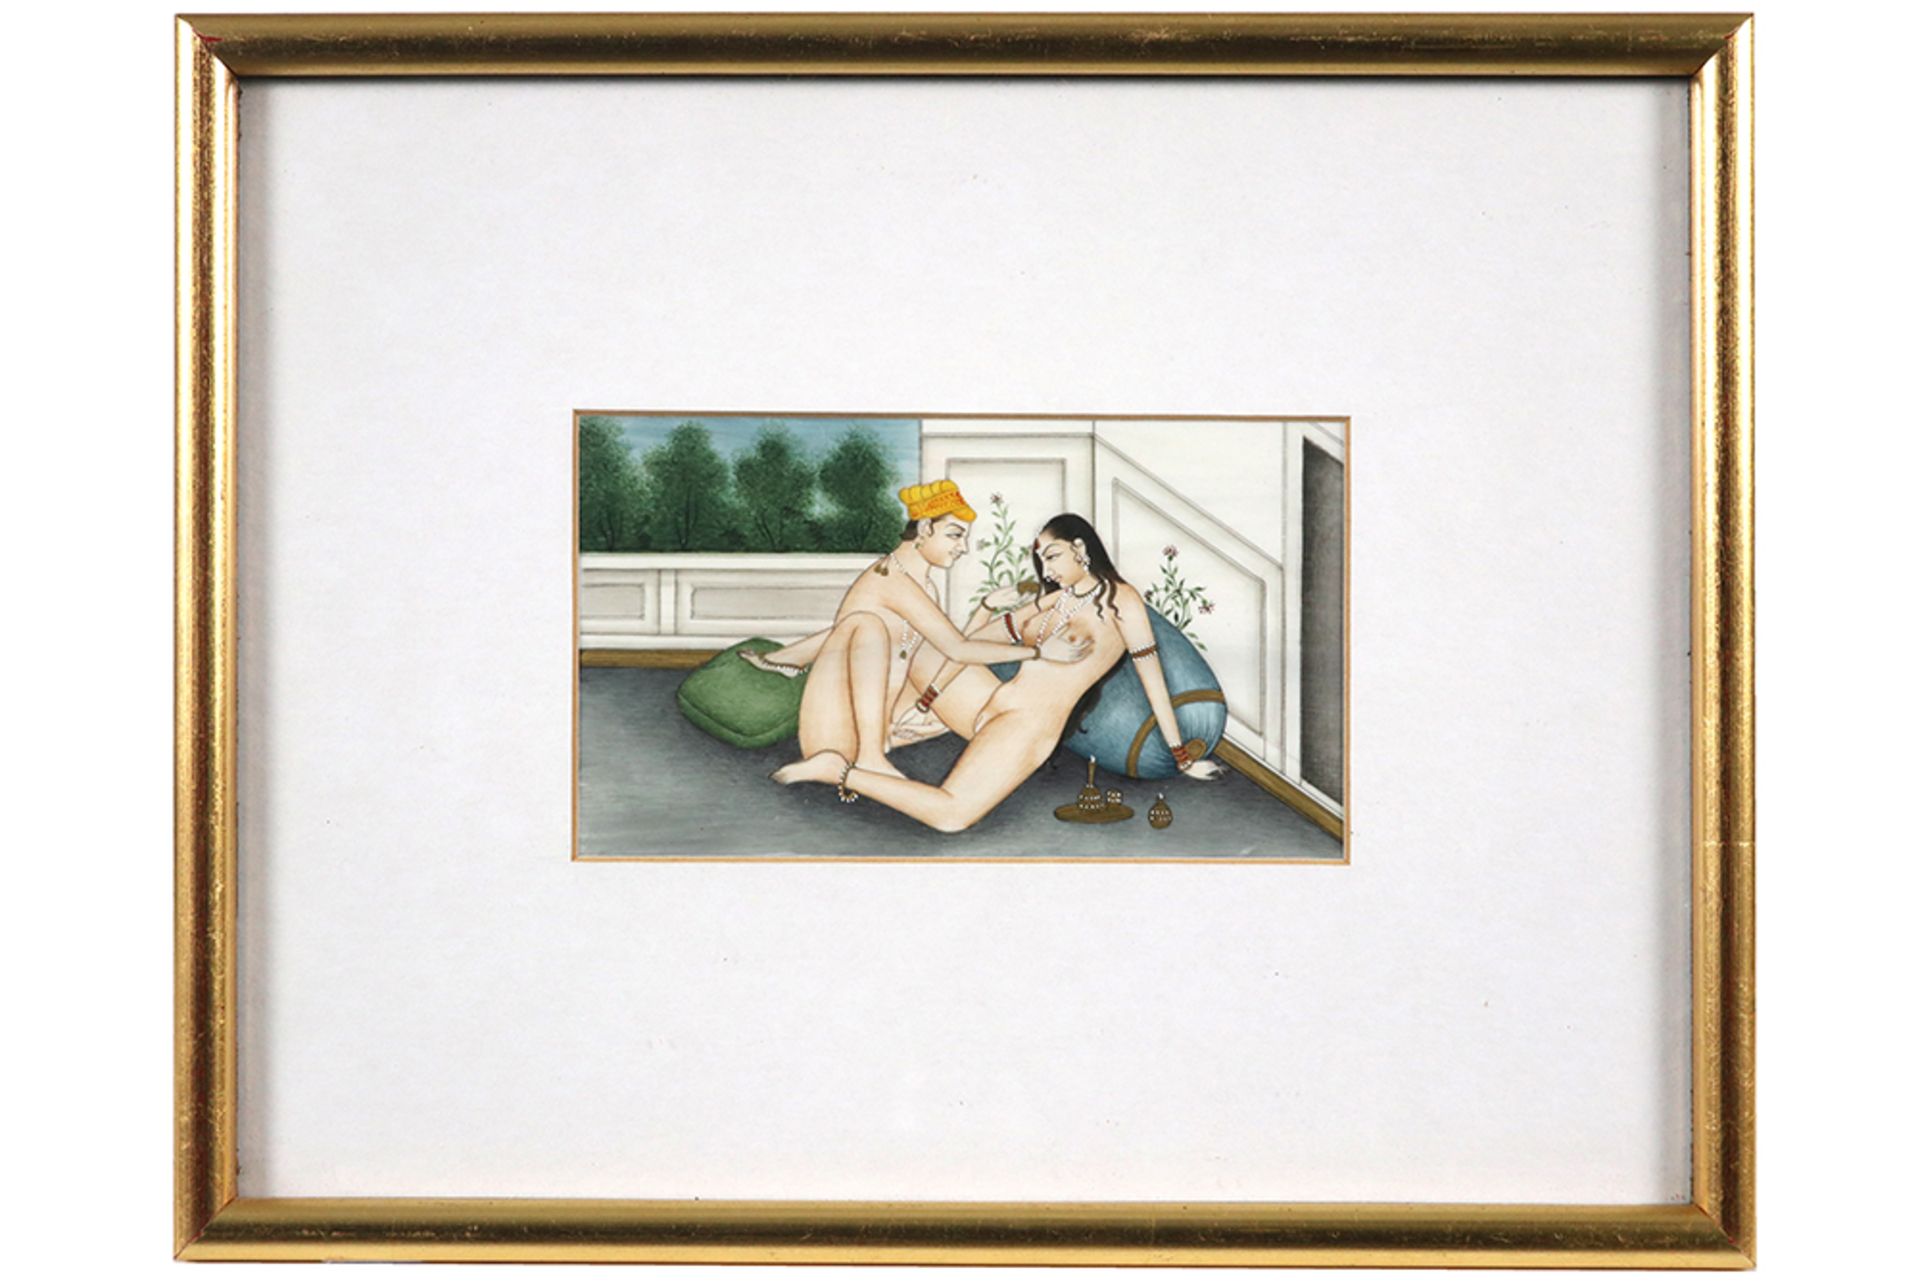 series of three Indian paintings with erotic scenes || Reeks van drie Indische schilderingen met - Bild 7 aus 8